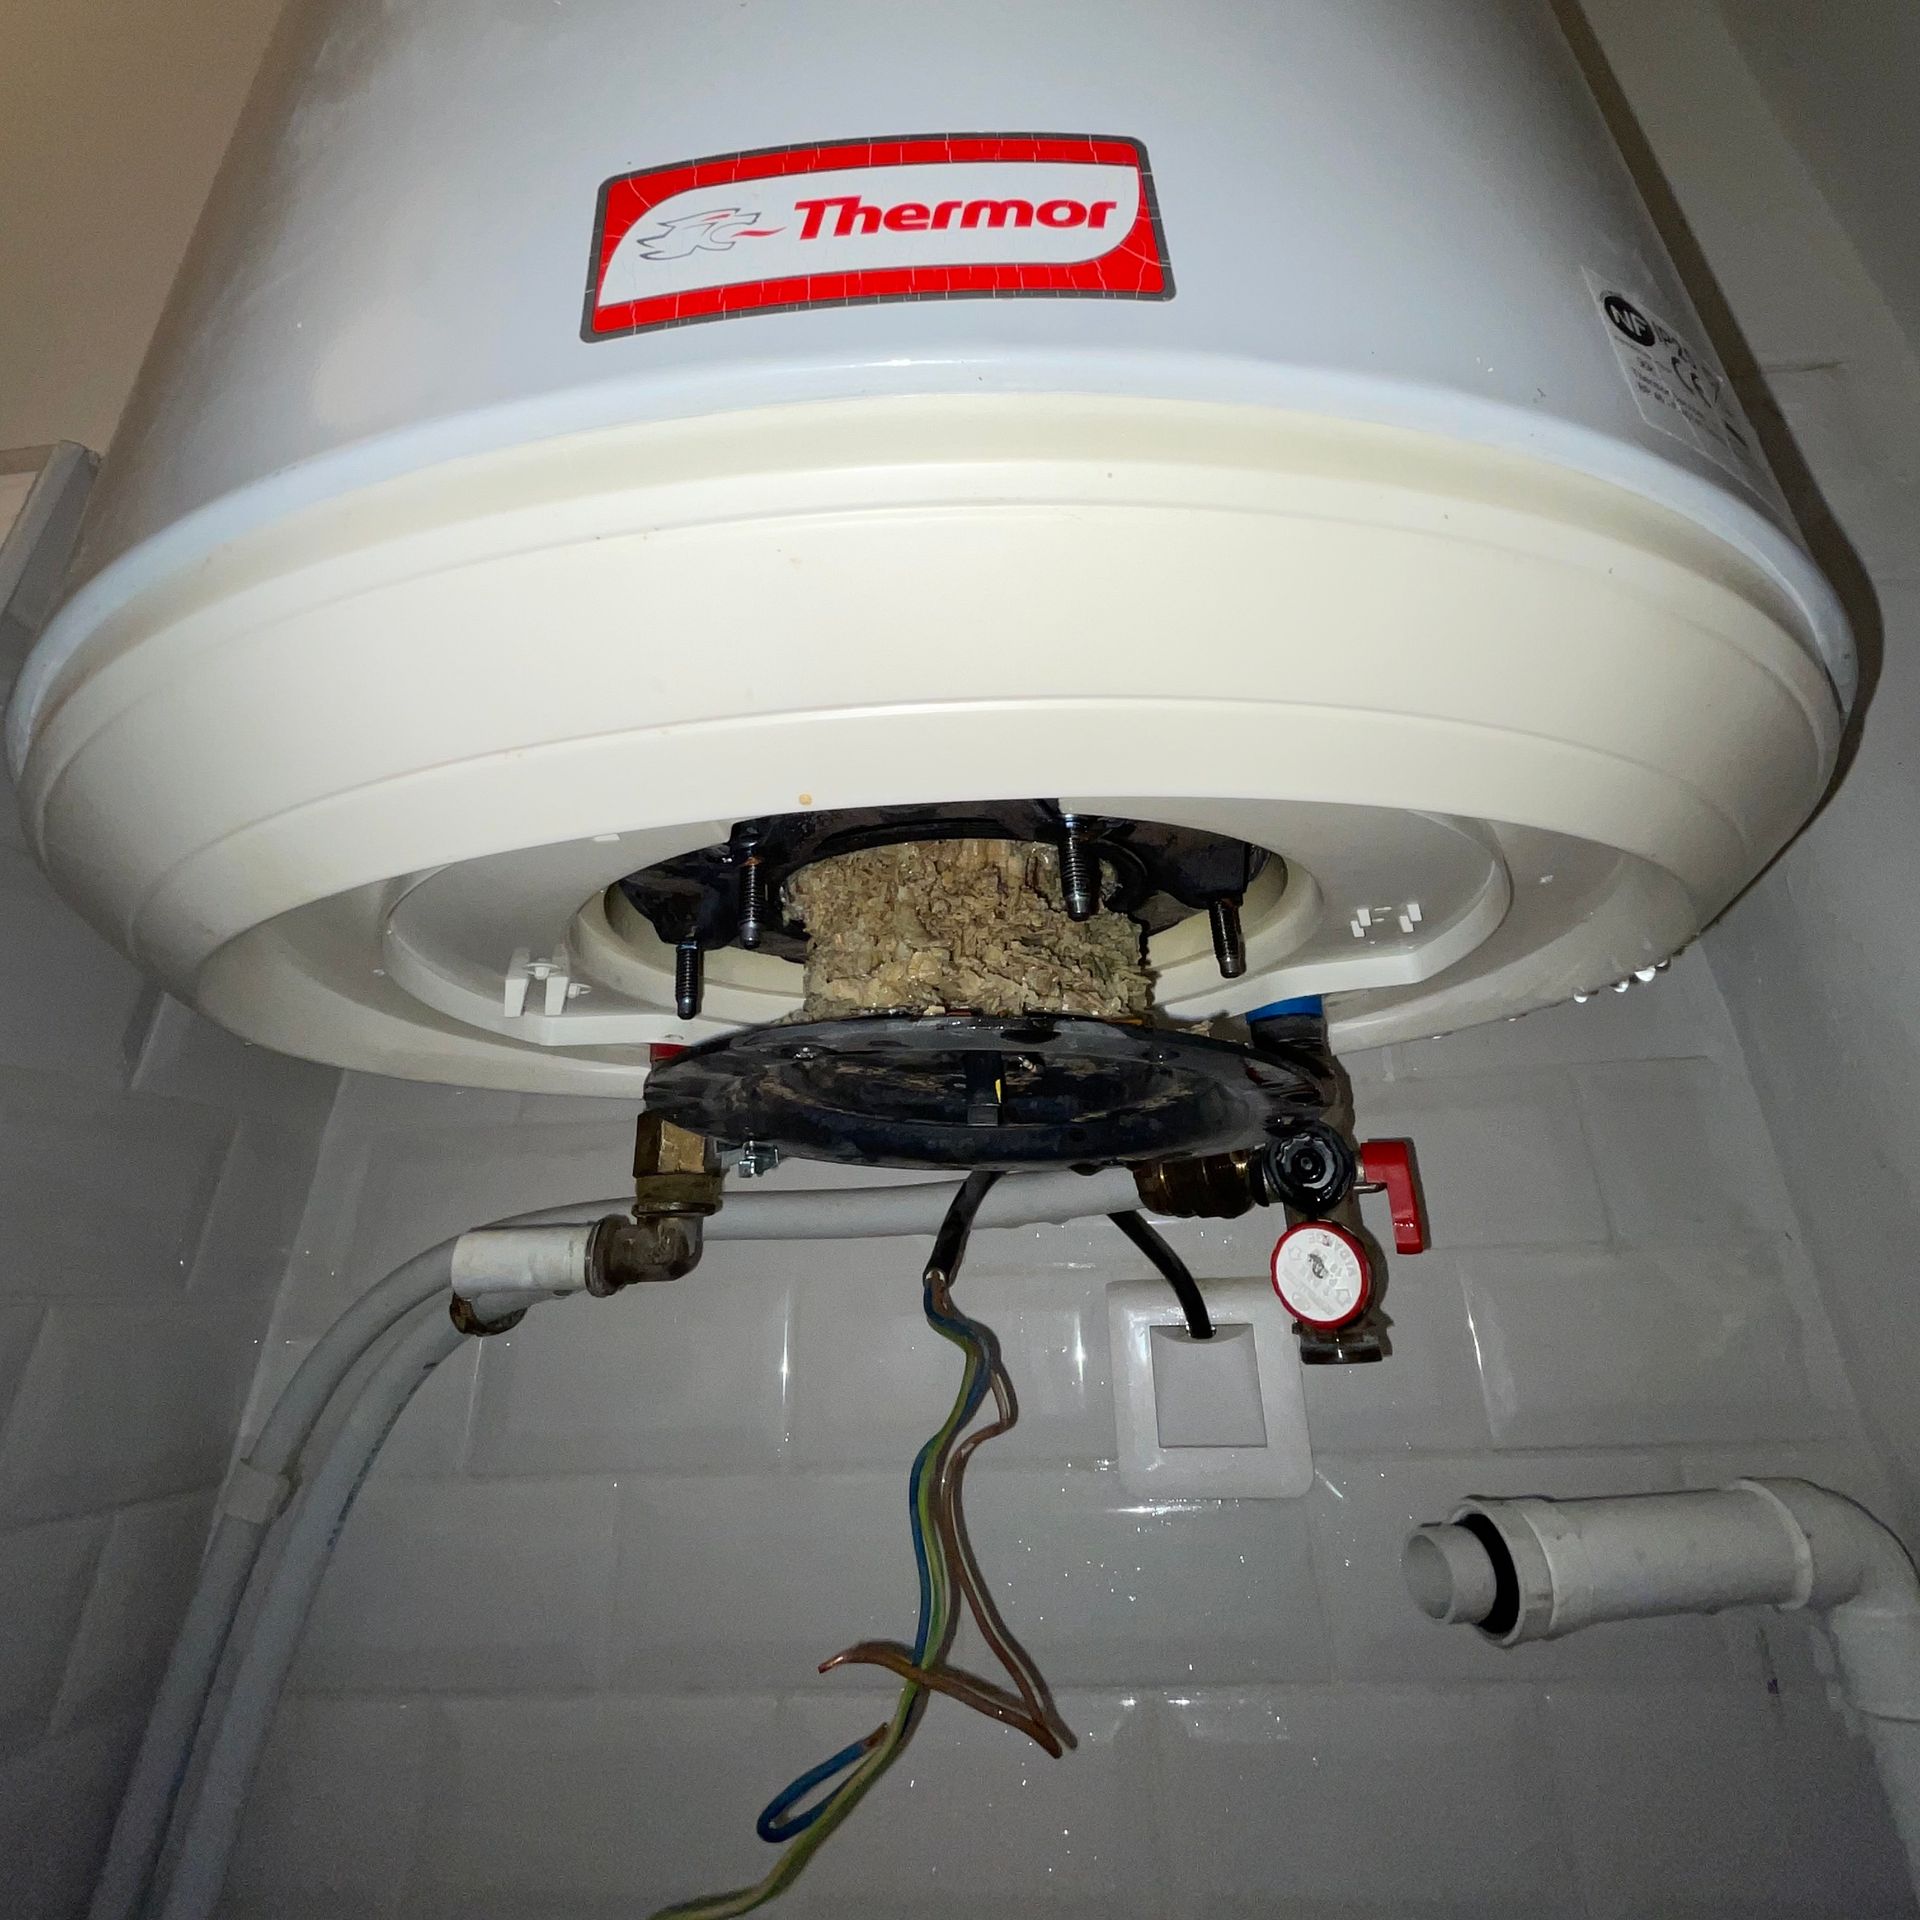 Un plombier de dos sous un ballon d'eau chaude accroché au mur d'une salle de bain